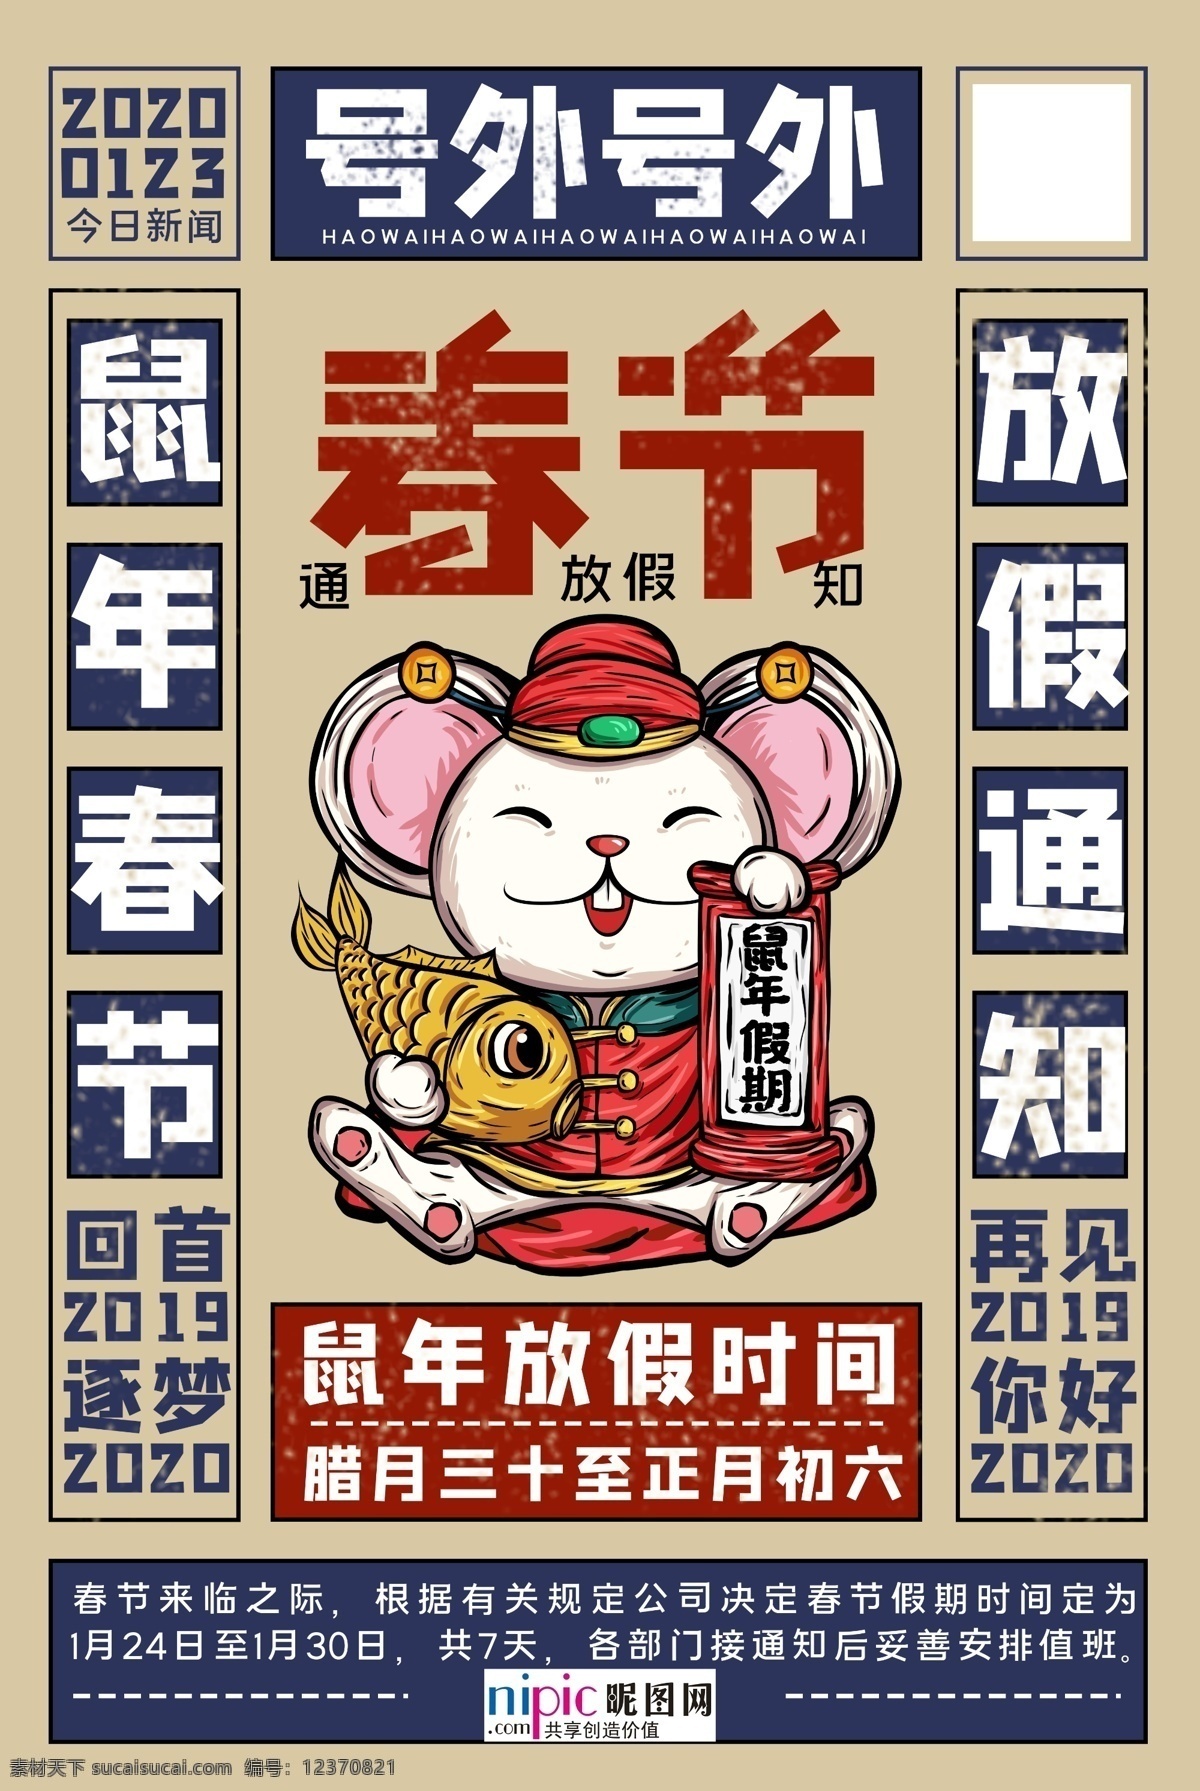 2020 春节 鼠年 元旦 放假 通知 海报